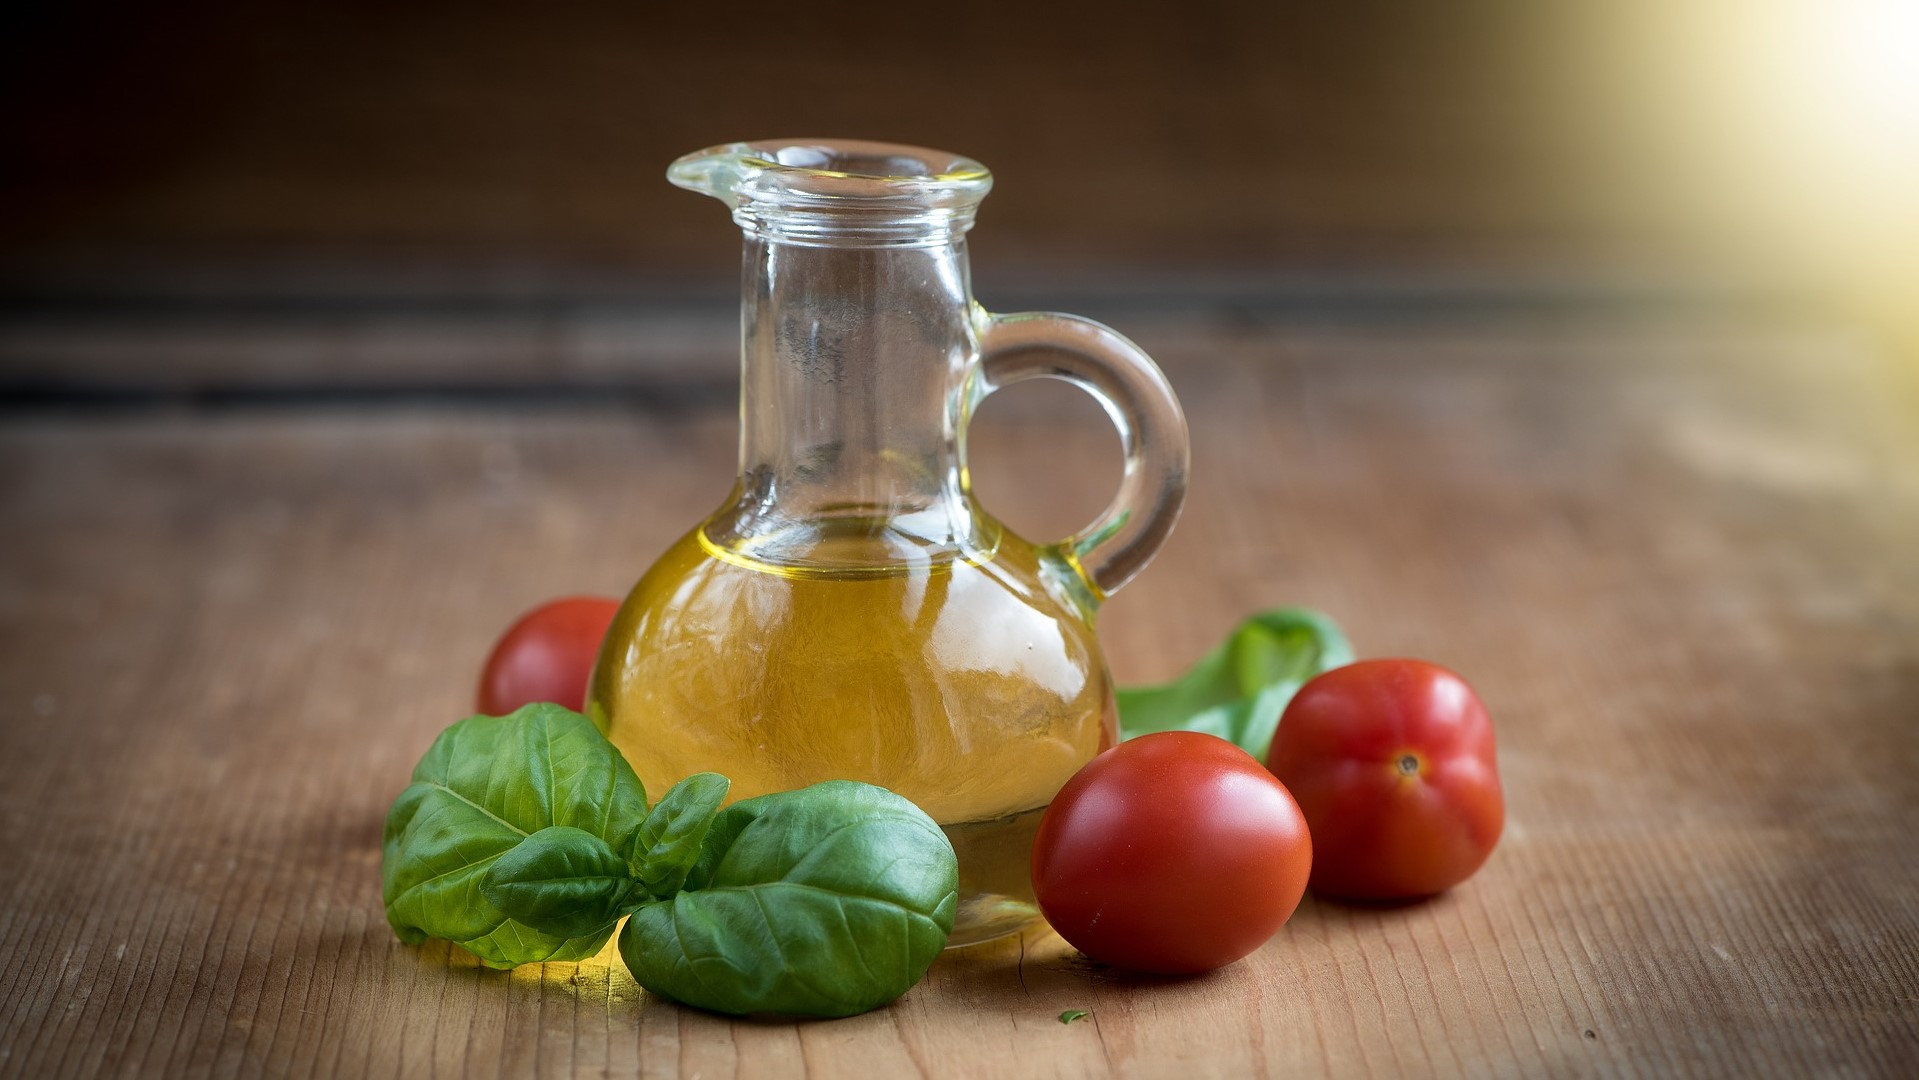 Maslinovo ulje uvelike nadmašuje svoju kulinarsku korist